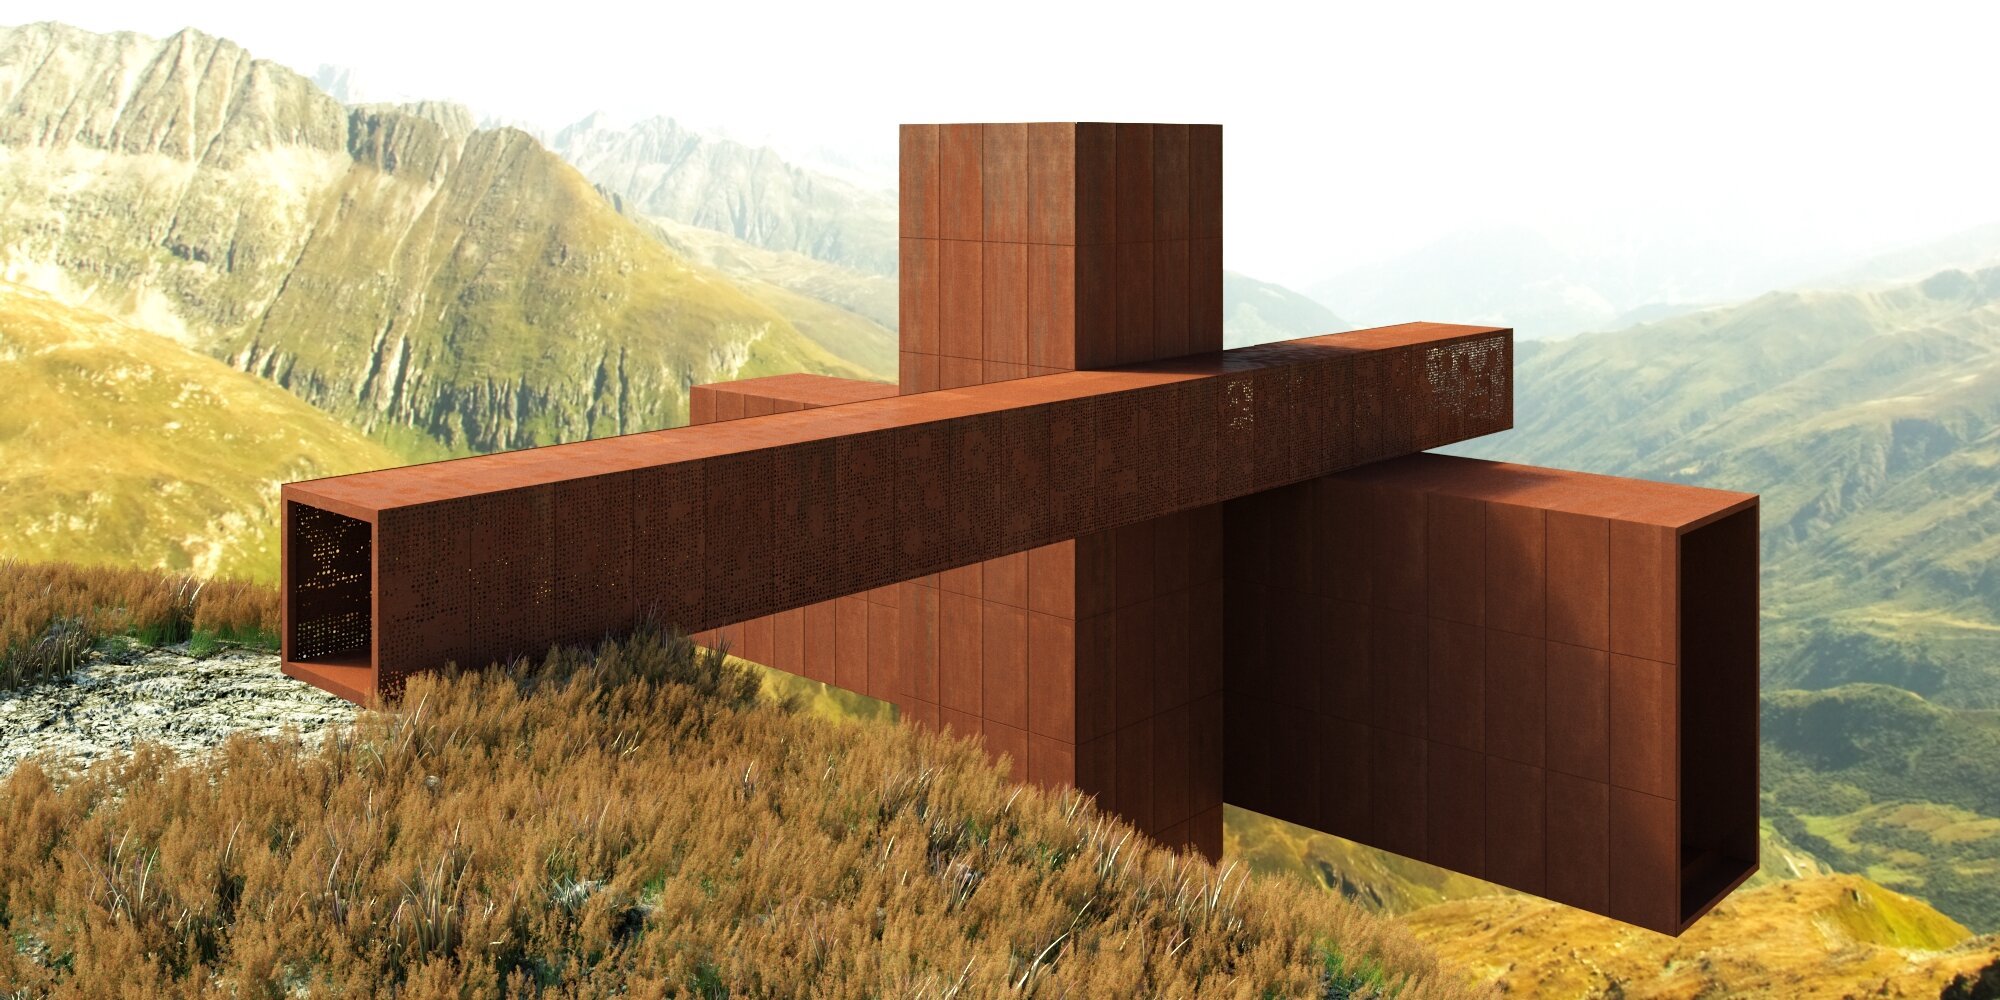 xyz house por el arquitecto John Beckmann en Suiza